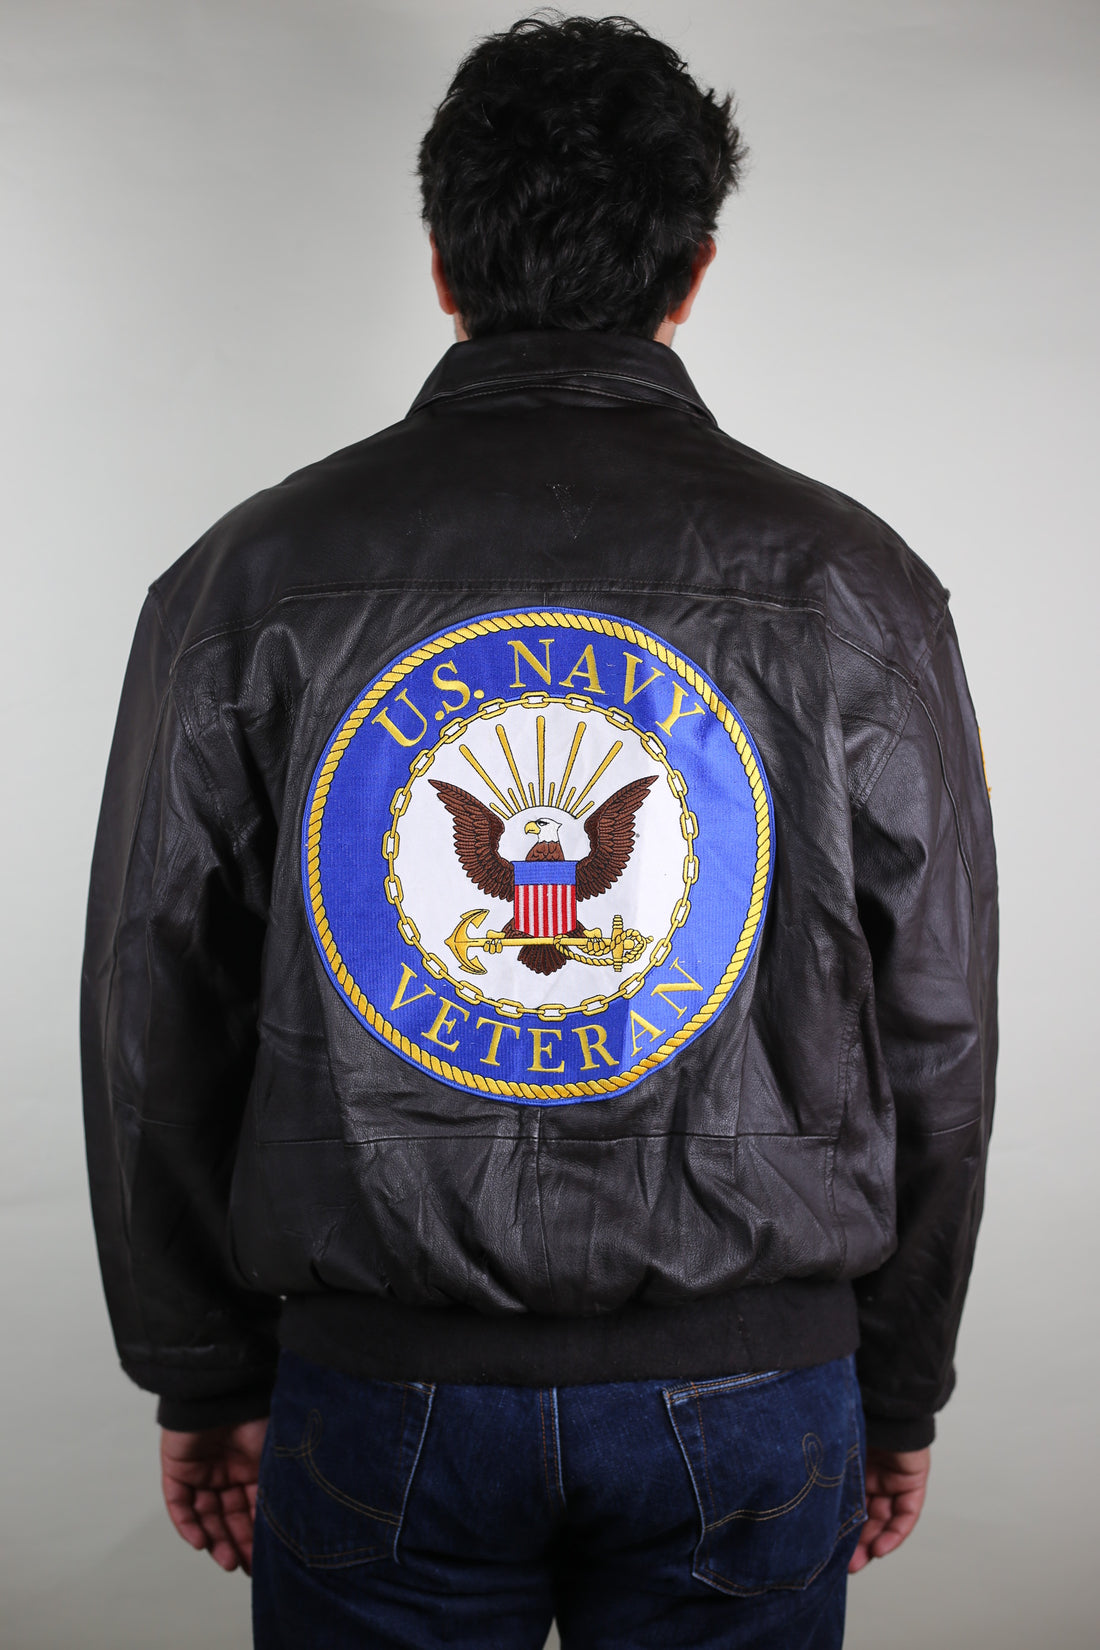 A2 Us Navy Leather Jacket - XL.